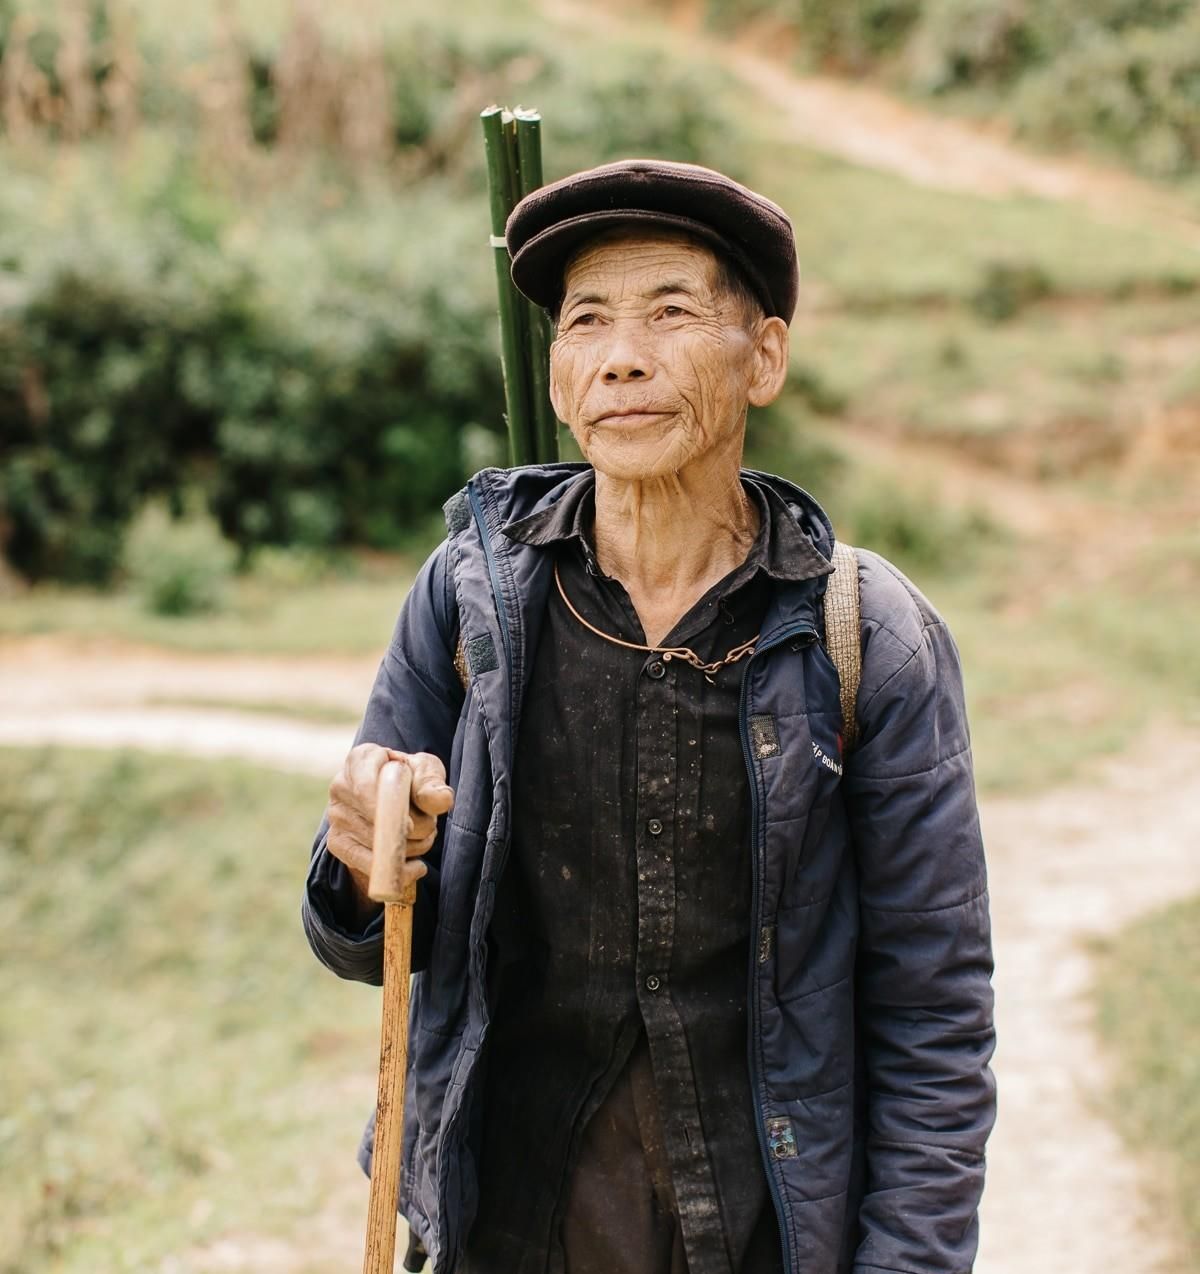 比利时摄影师一个人穿越越南北部 拍摄的精彩照片